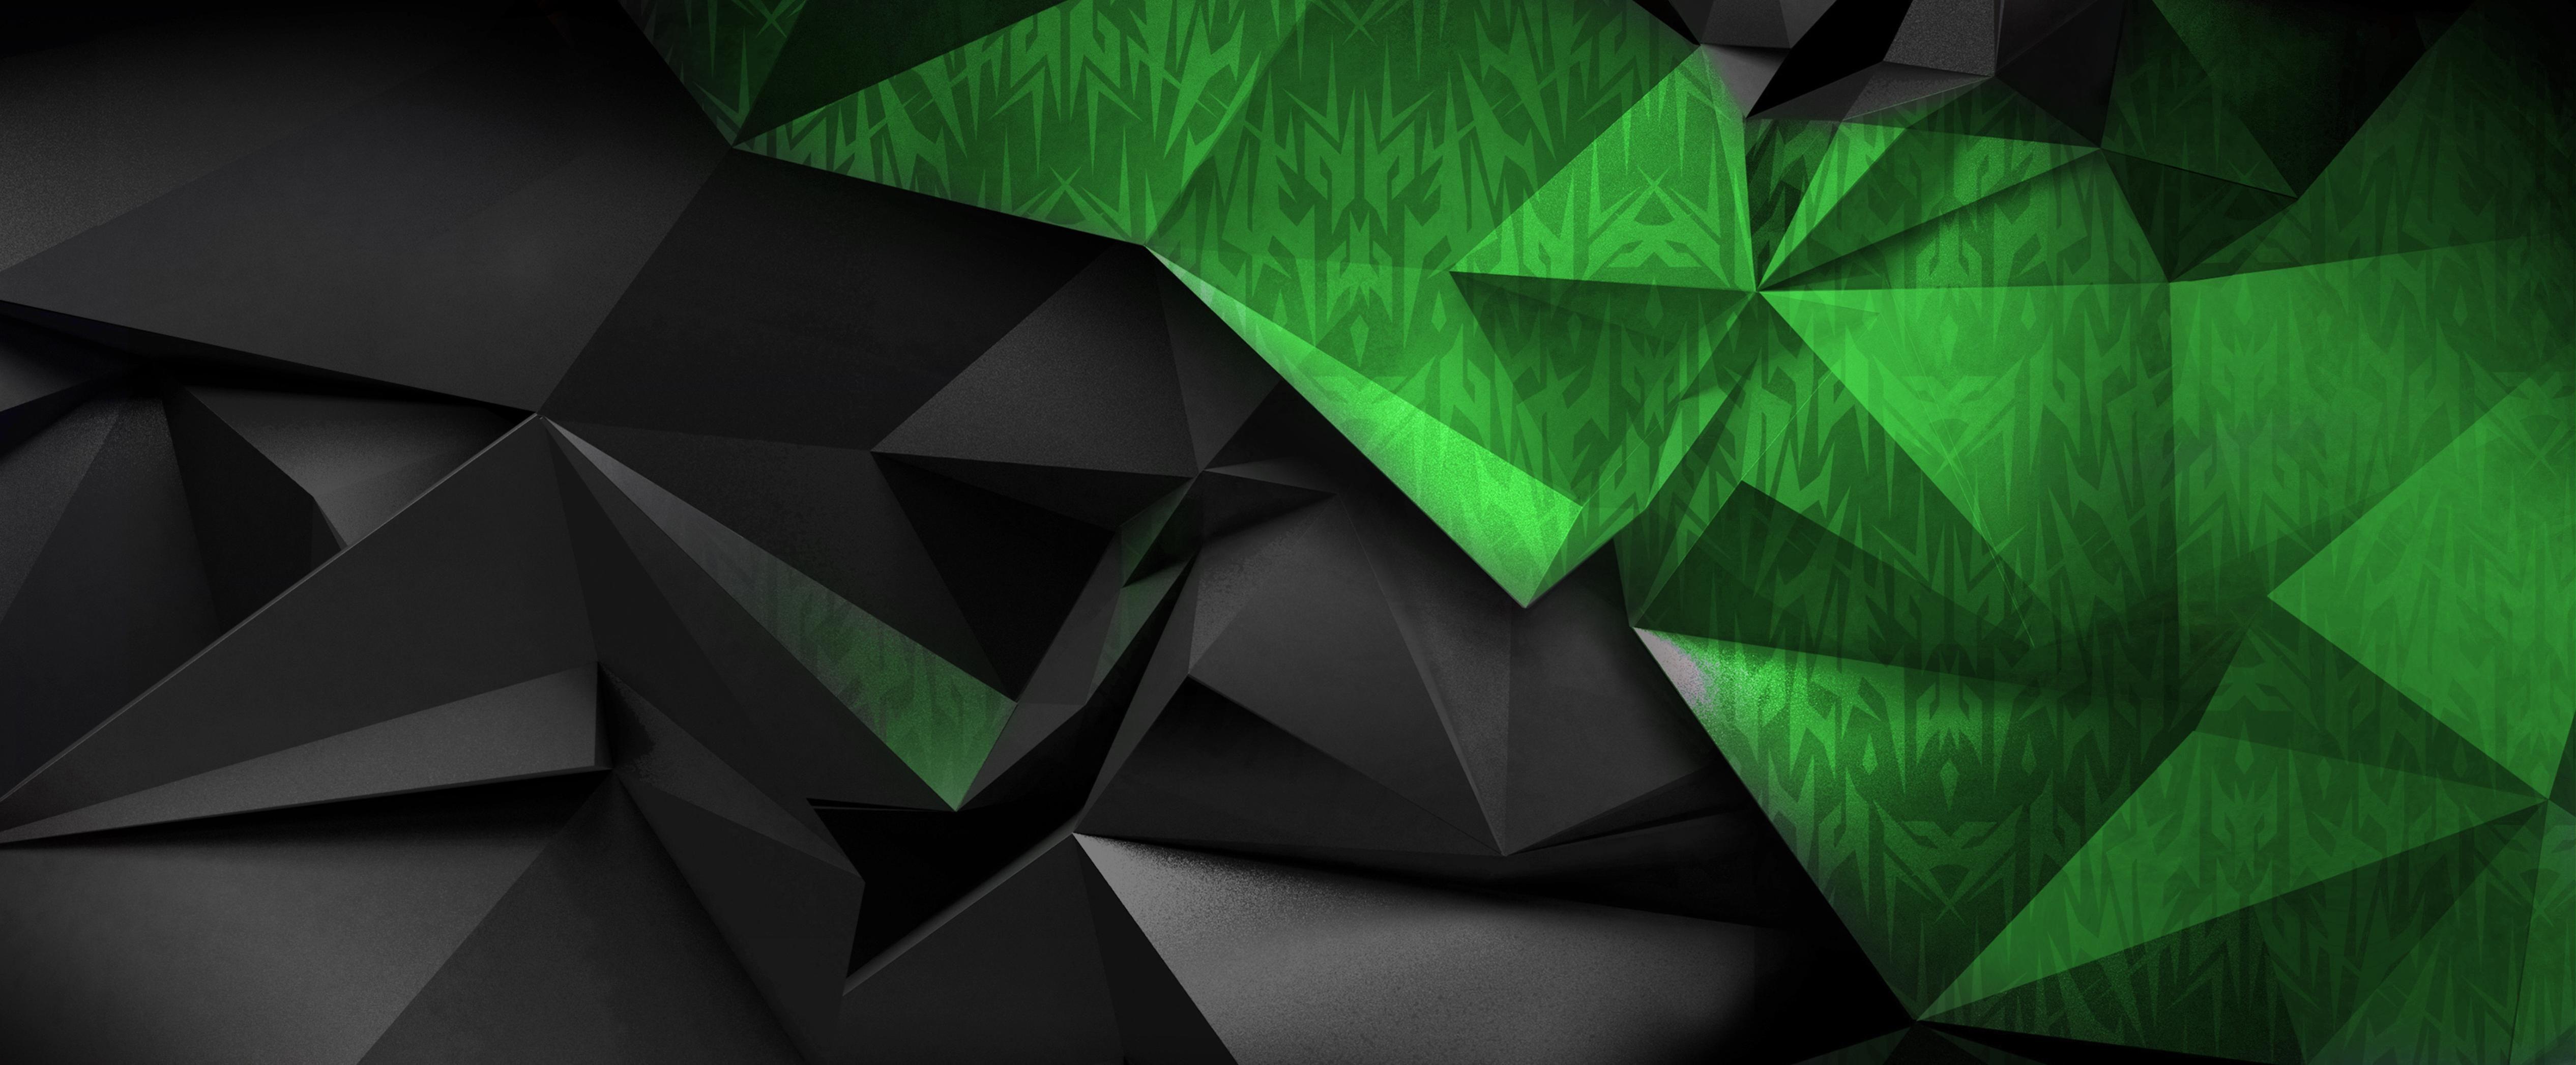 Gaming Desktop Green Wallpapers Wallpaper Cave